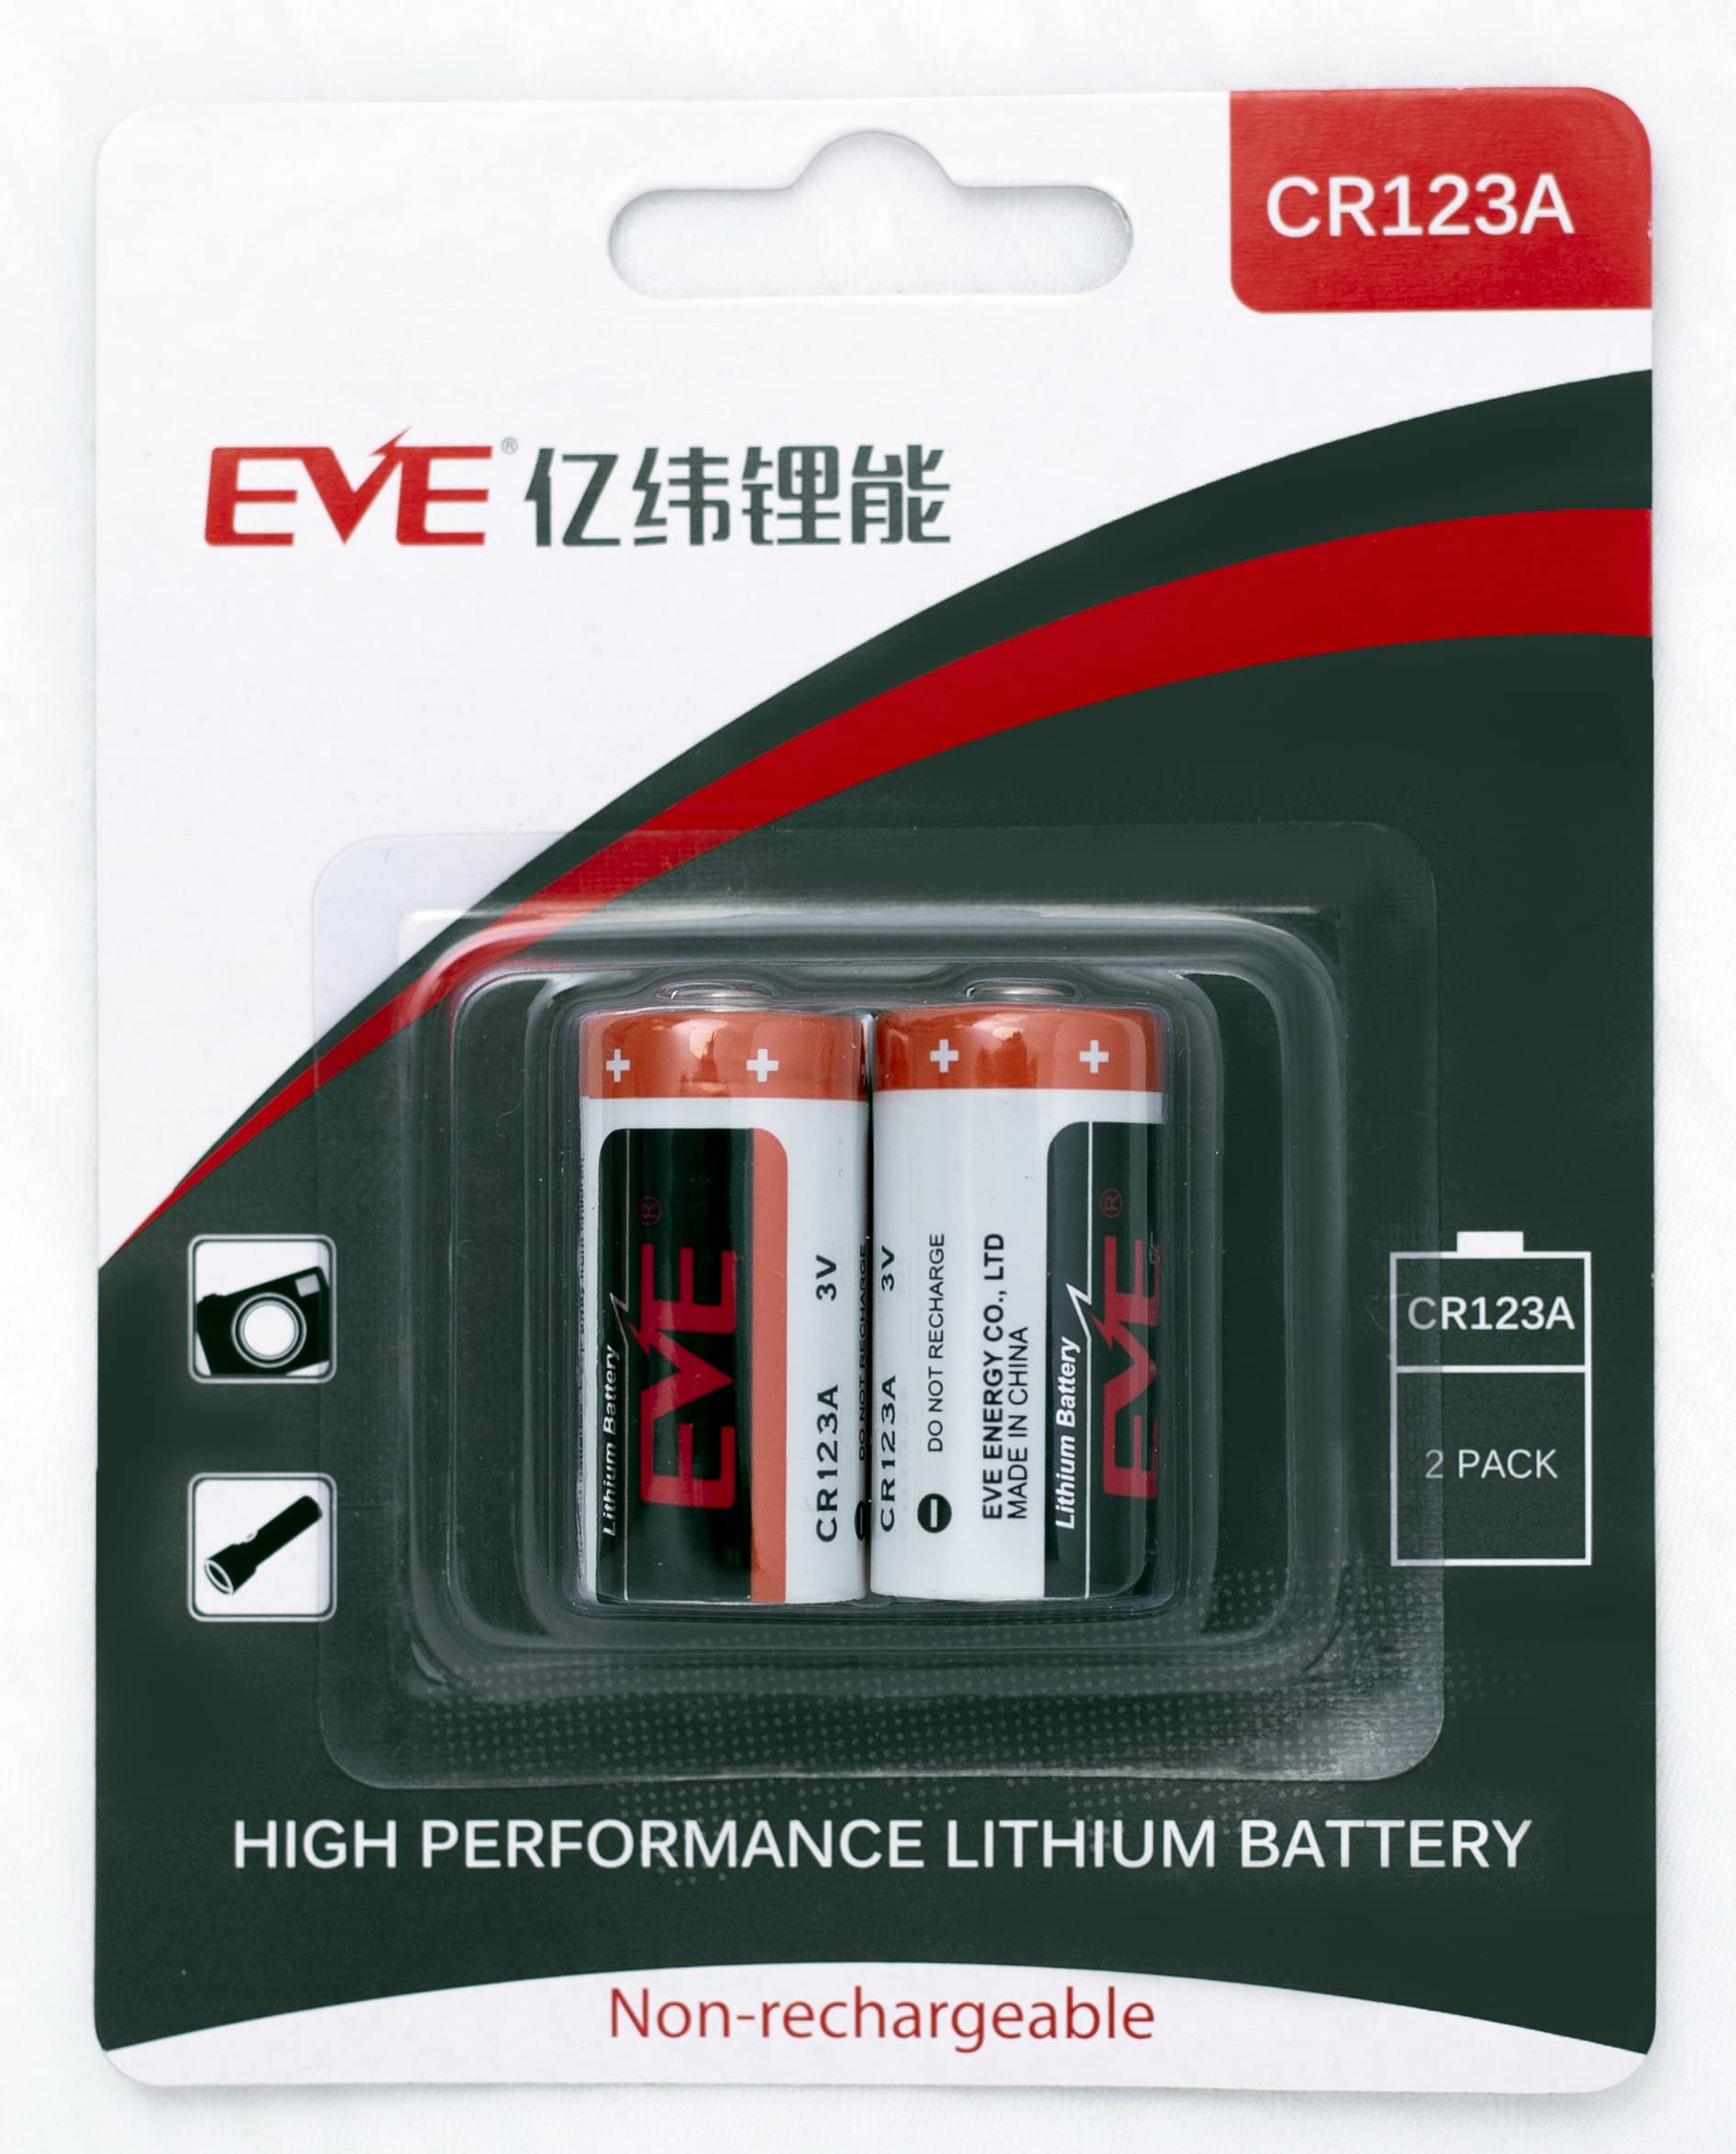 EVE Energy CR123A 3V リチウム電池 2個入りパッケージ カメラ 懐中電灯 IoT家電 Arlo カメラ Qrio Lock キュリオロック Sesame セサミ スマートロック リチウム電池 リチウム1次電池 KK-1-CR1…